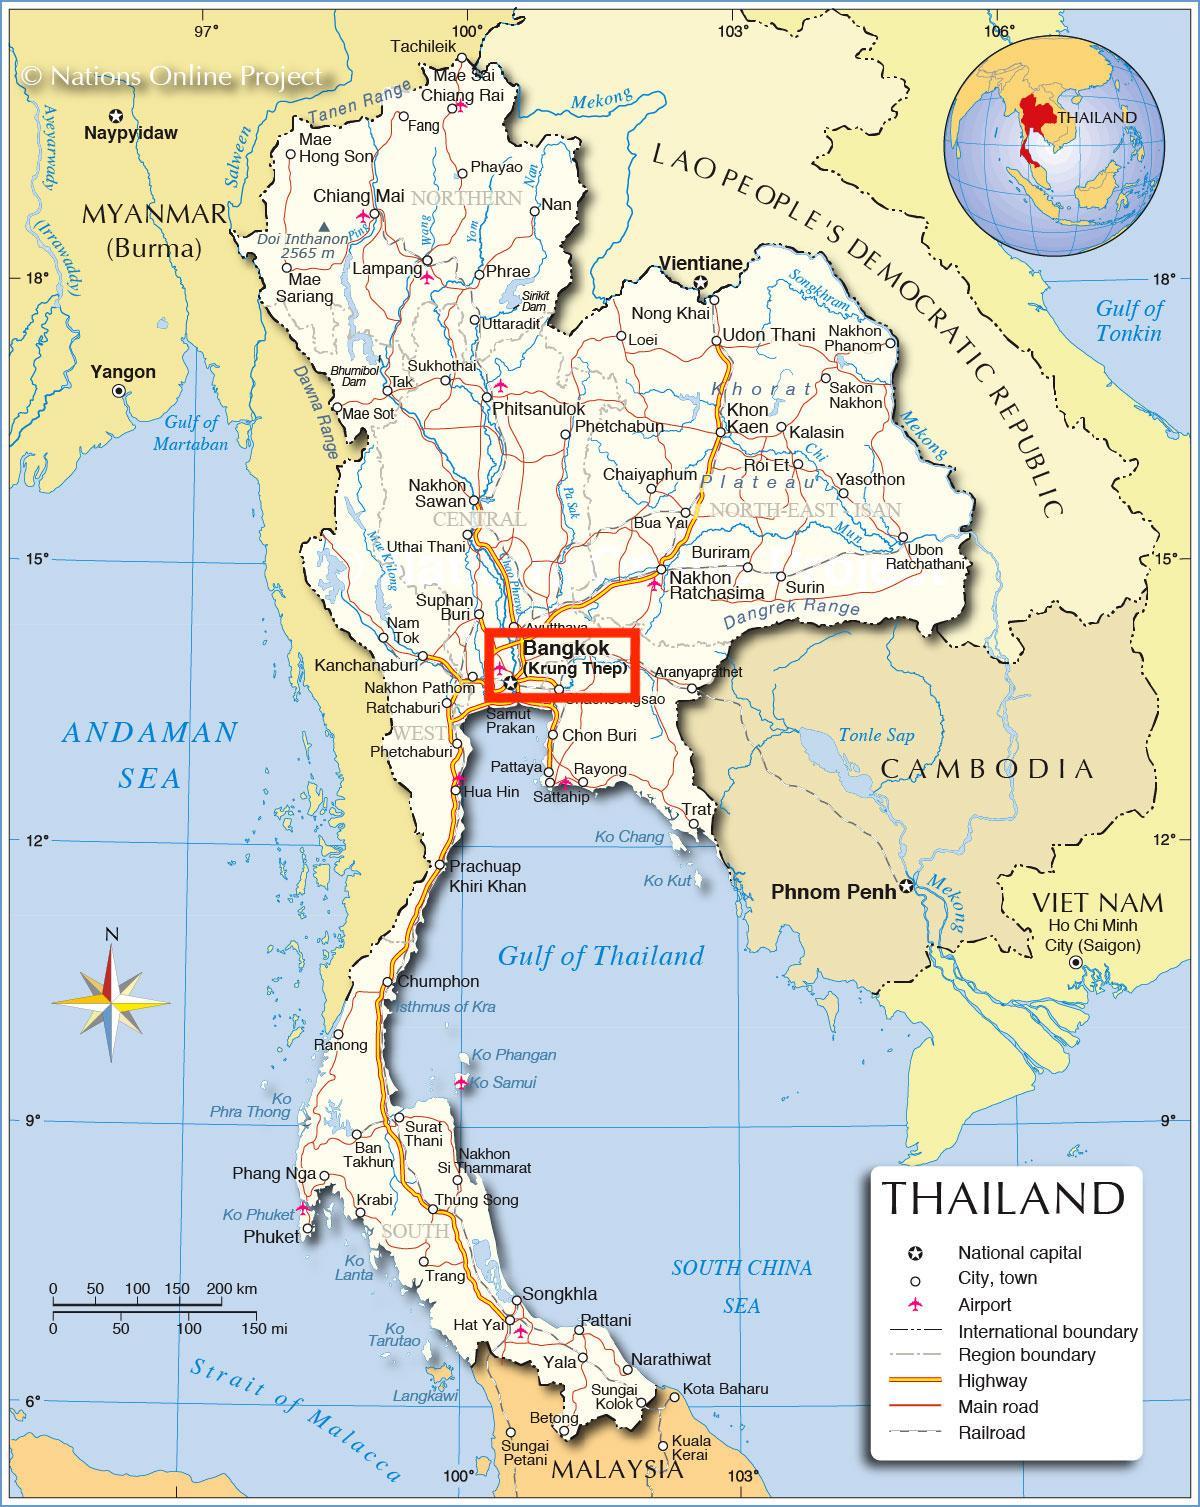 Ville de Bangkok (Krung Thep) sur la carte de Thailand